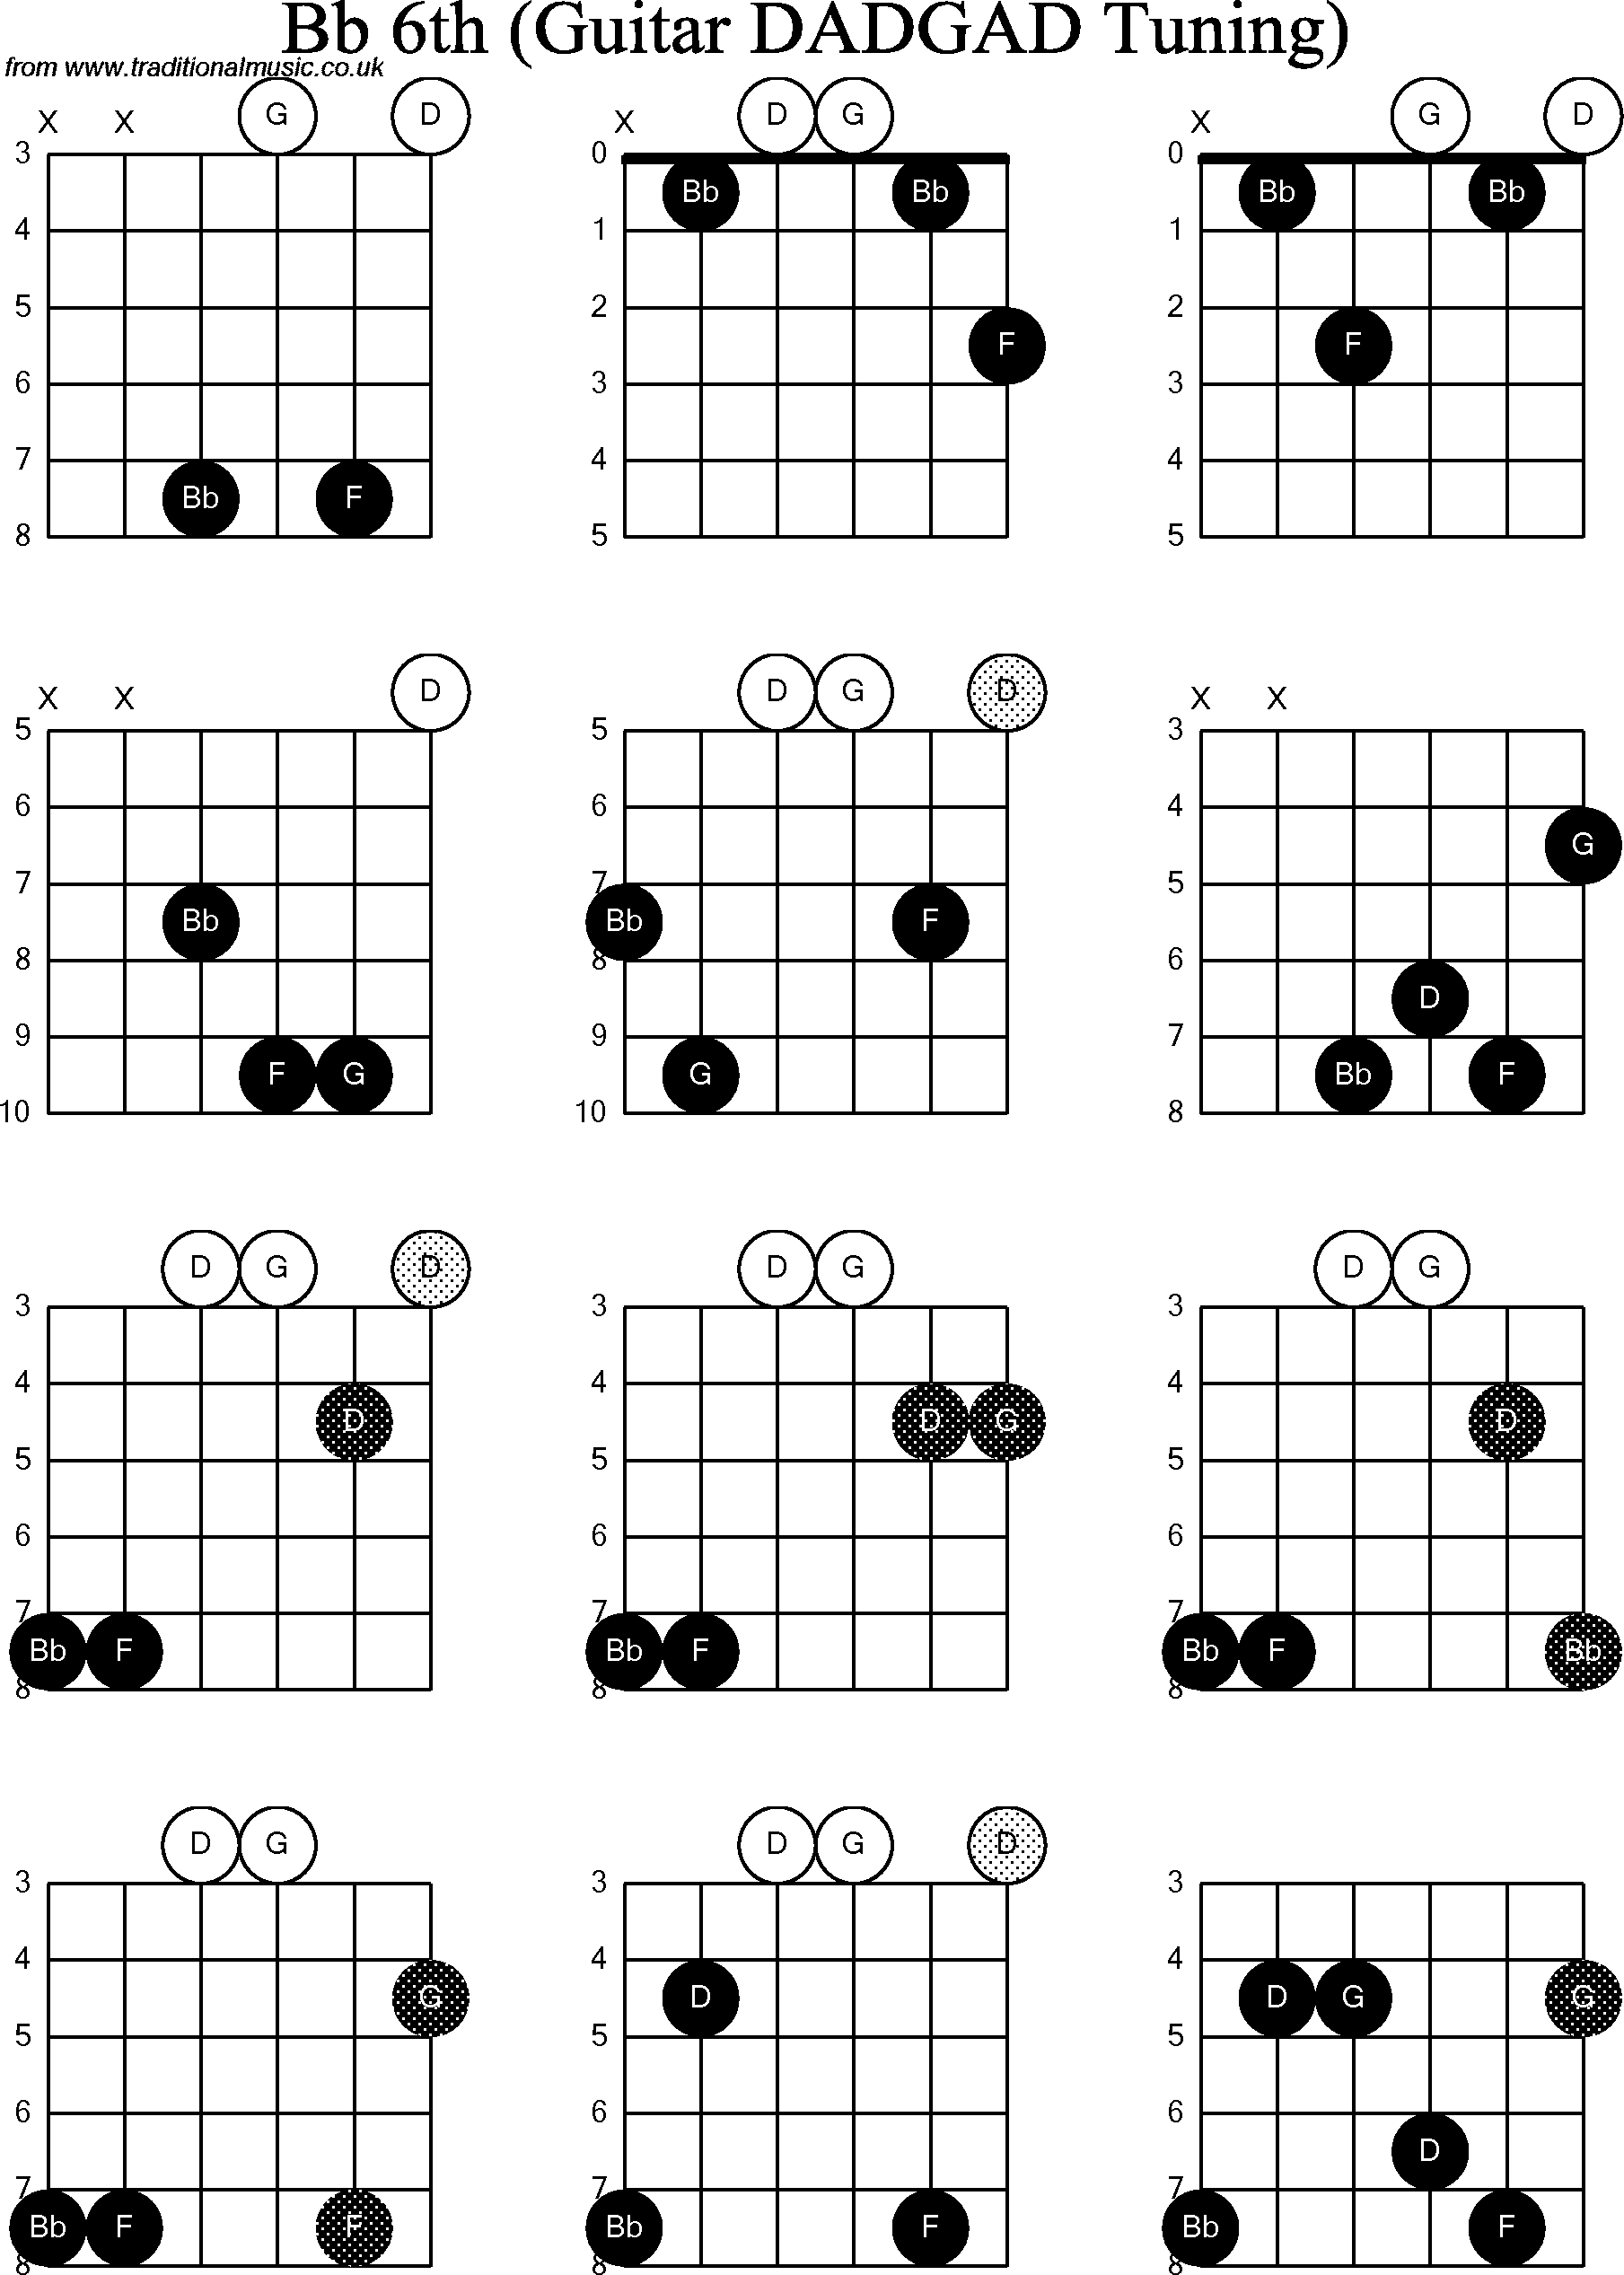 Chord Diagrams for D Modal Guitar(DADGAD), Bb6th